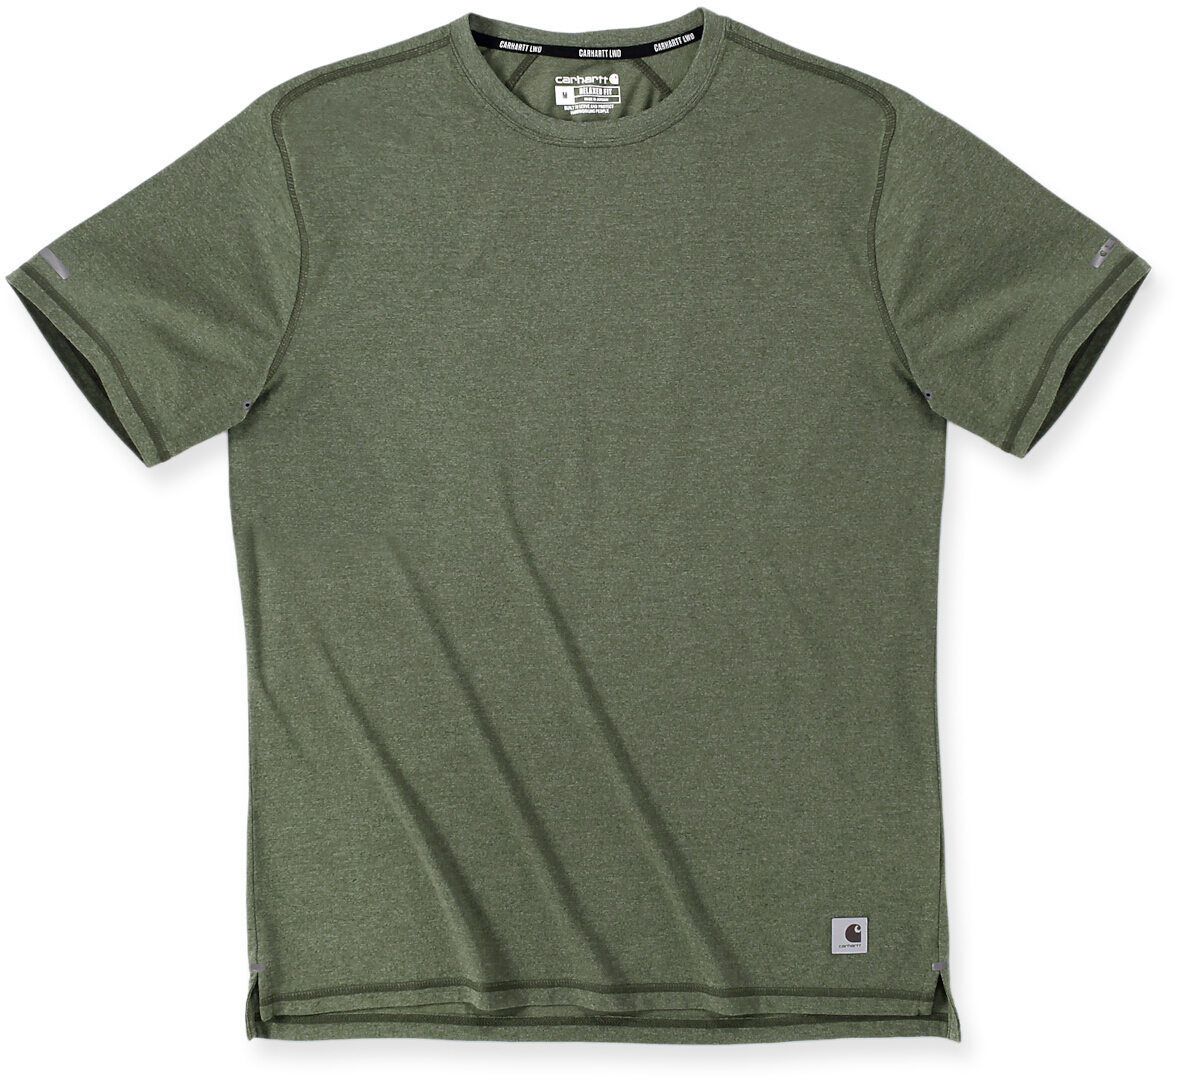 Carhartt Lightweight Durable Relaxed Fit Camiseta - Verde (XL)